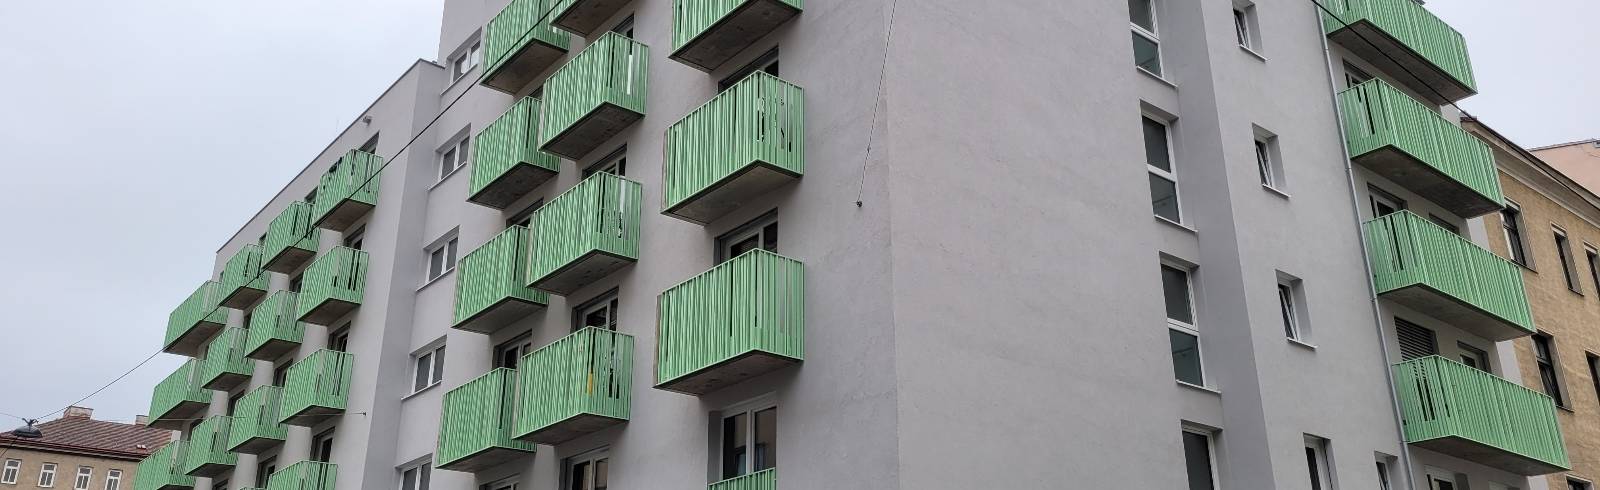 Neues Haus für obdach- und wohnungslose Menschen in Wien